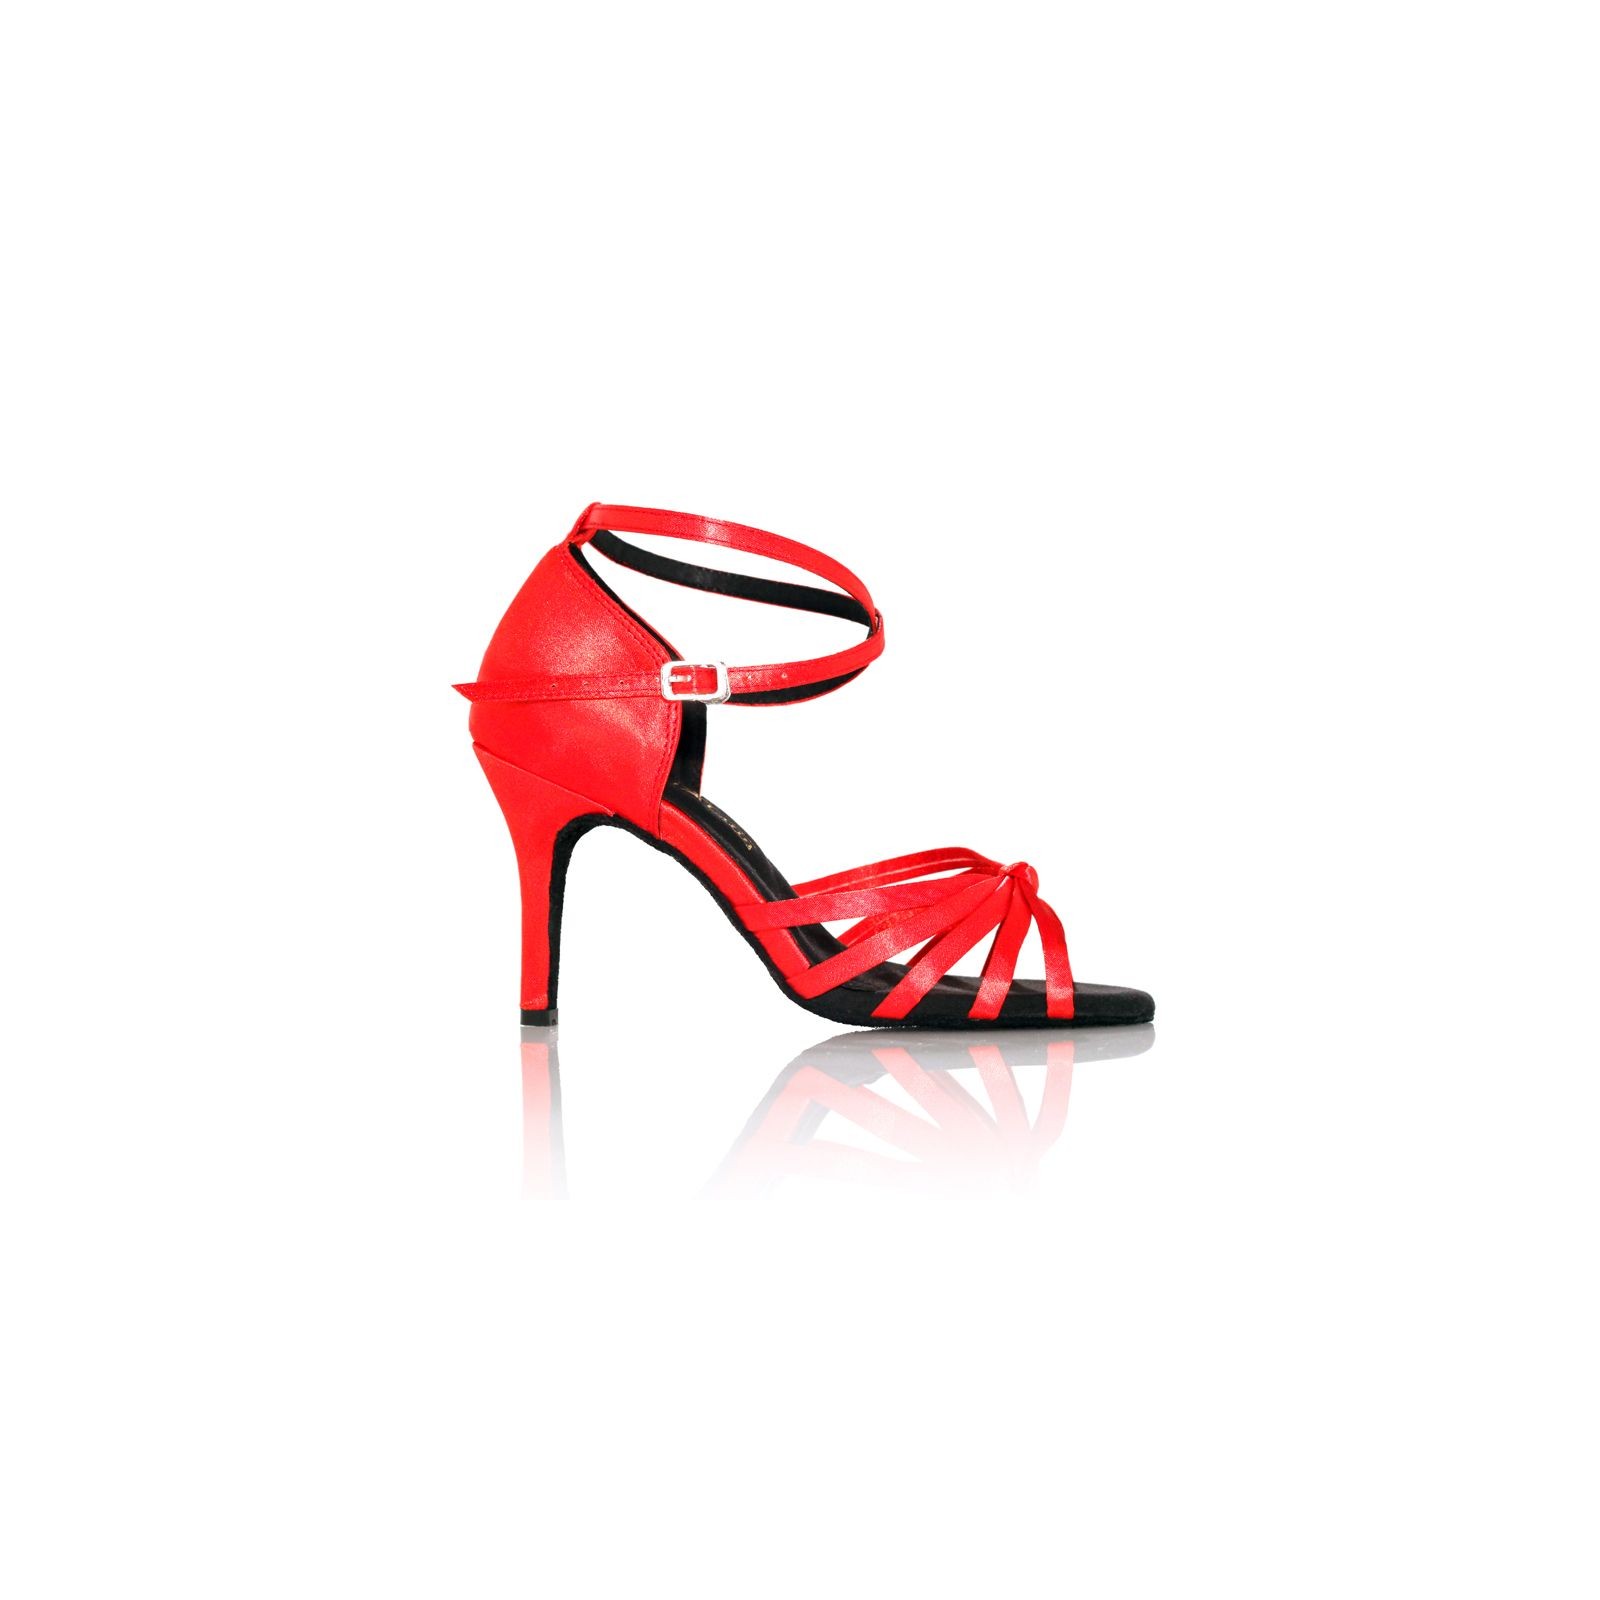 LSHEL Chaussures de Danse pour Femmes Chaussures de Danse Latine